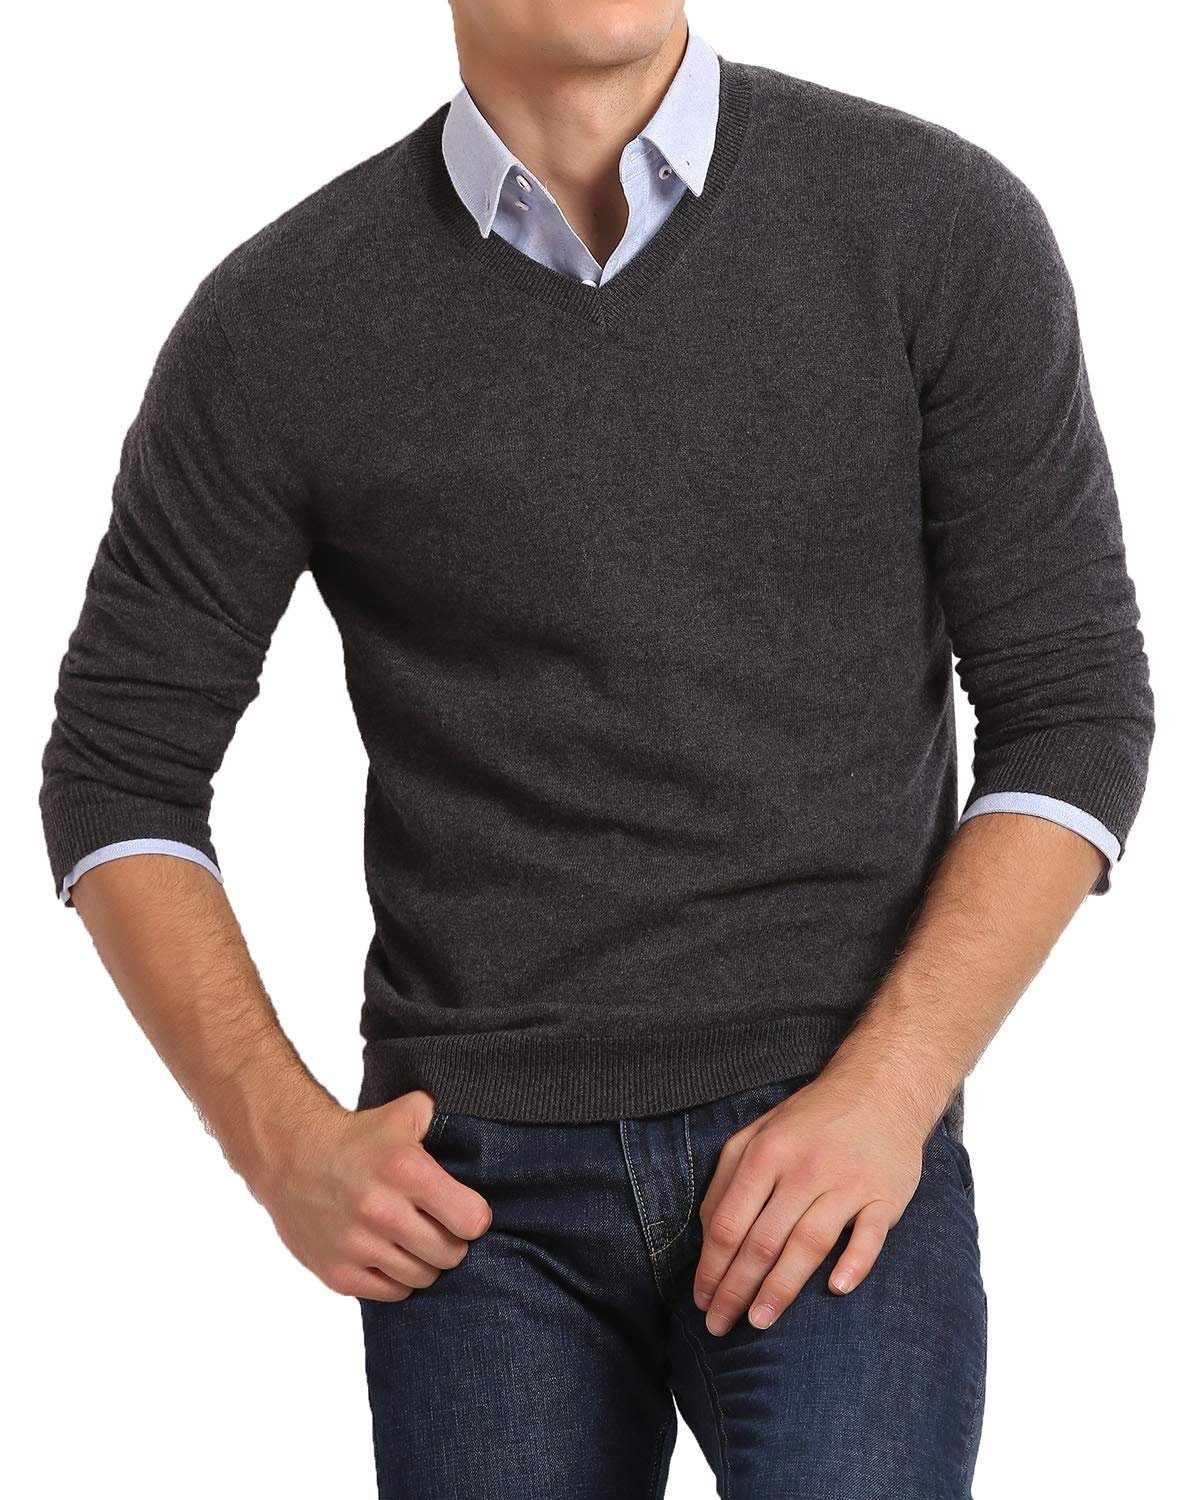 Housruse V-Ausschnitt-Pullover V-Ausschnitt-Pullover,Herren Basic Strick  V-Ausschnitt Pullover mit langen Ärmeln geeignet für Sport und Business Größe  L Lässig